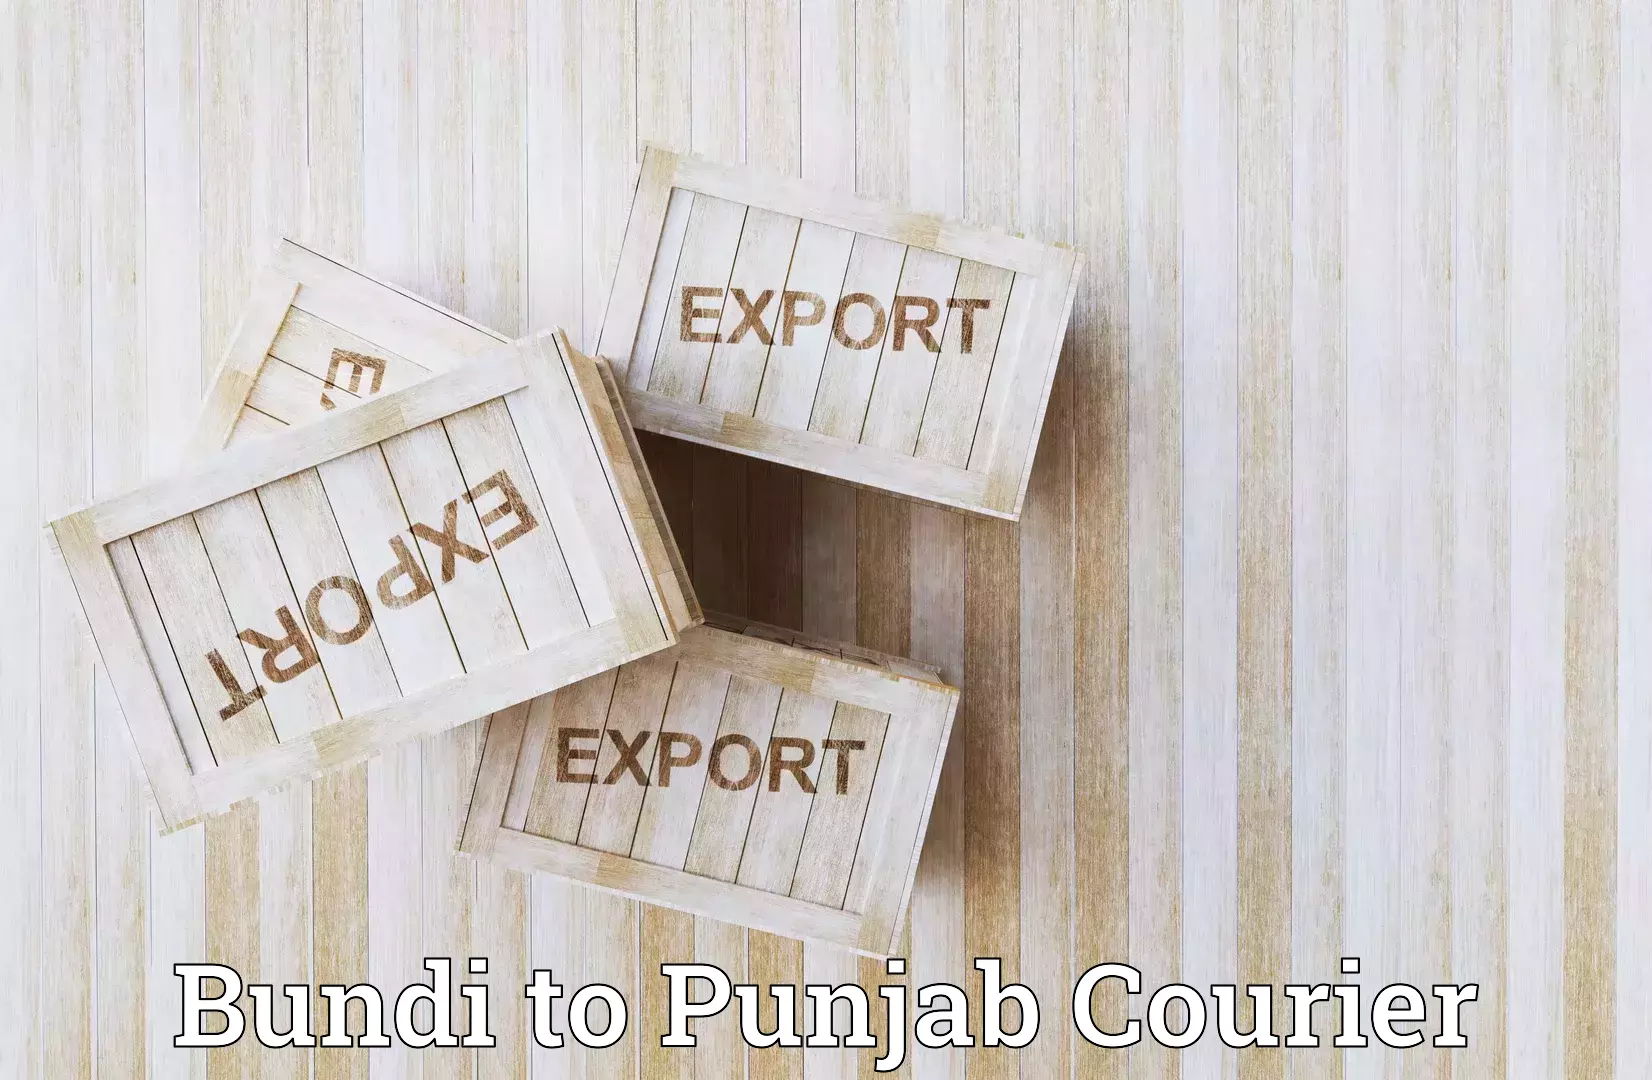 High-priority parcel service Bundi to Punjab